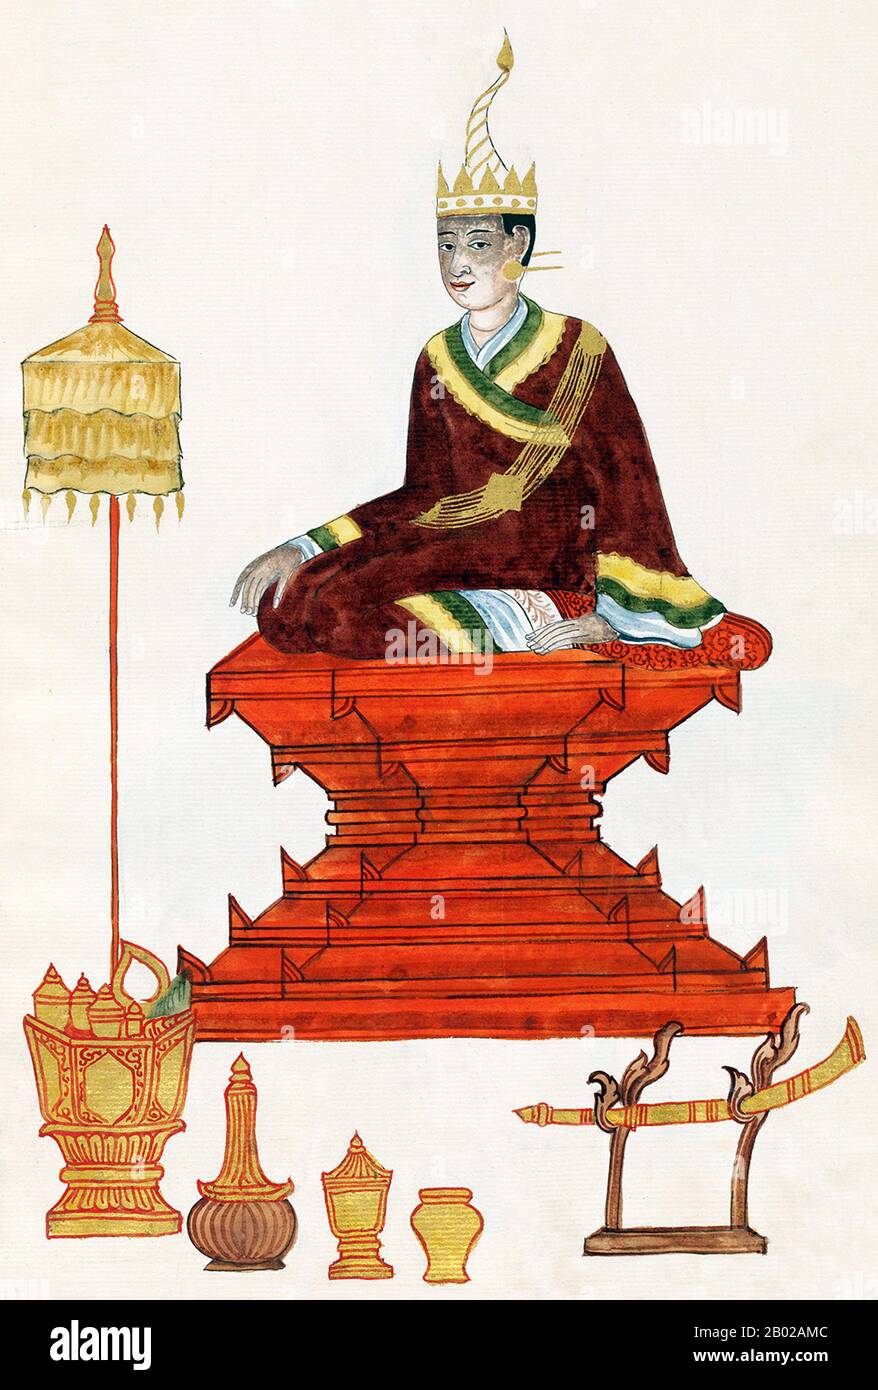 La dinastia Konbaung fu l'ultima dinastia che governò la Birmania (Myanmar), dal 1752 al 1885. La dinastia creò il secondo impero più grande della storia birmana, e continuò le riforme amministrative avviate dalla dinastia Toungoo, gettando le basi dello stato moderno della Birmania. Le riforme si rivelarono insufficienti per arginare il progresso degli inglesi, che sconfissero i birmani in tutte e tre le guerre anglo-birmane in un arco di sei decenni (1824–1885) e terminarono la monarchia birmana millenaria nel 1885. Foto Stock